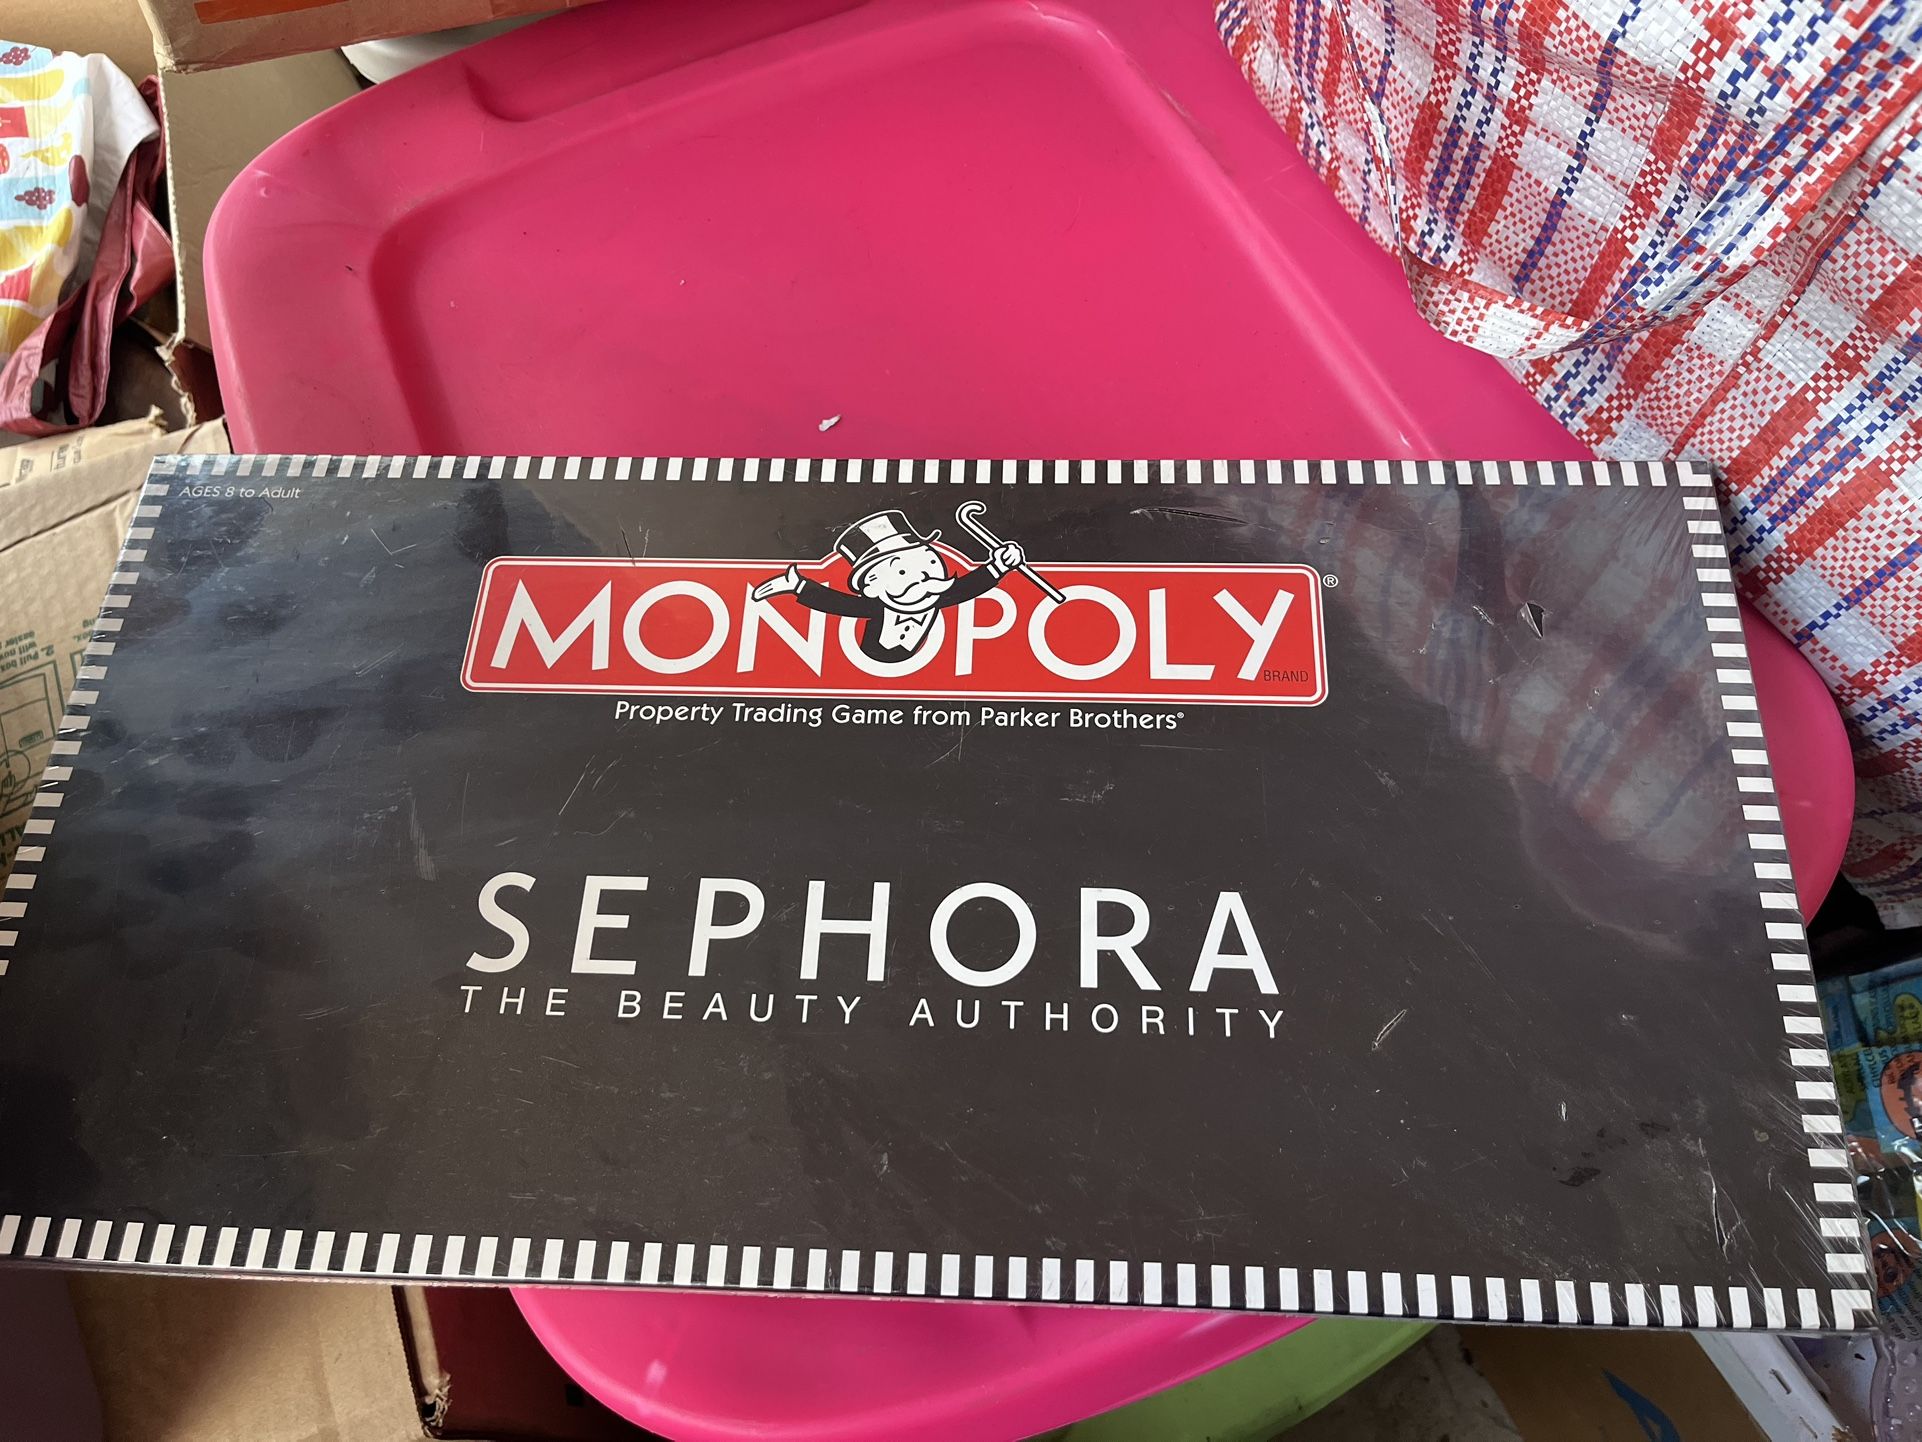 Sephora Monopoly 